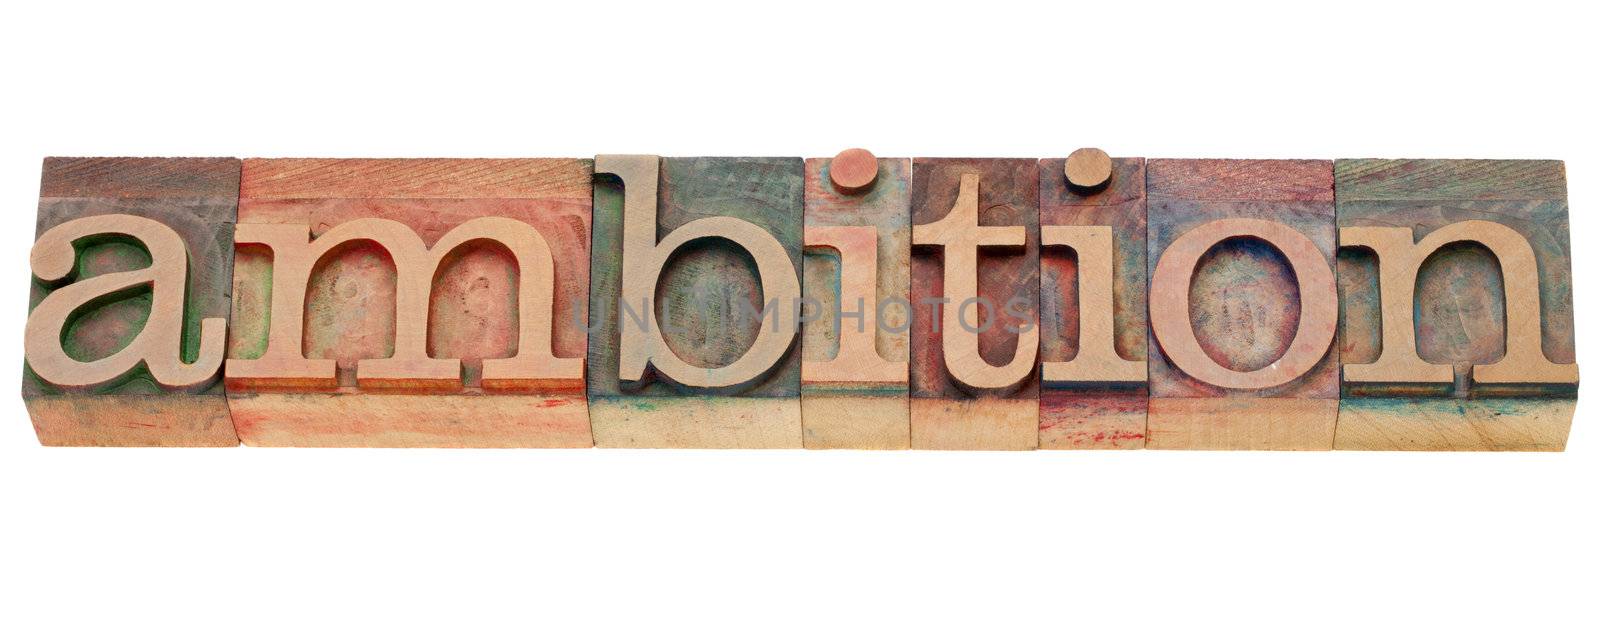 ambition word in letterpress type by PixelsAway